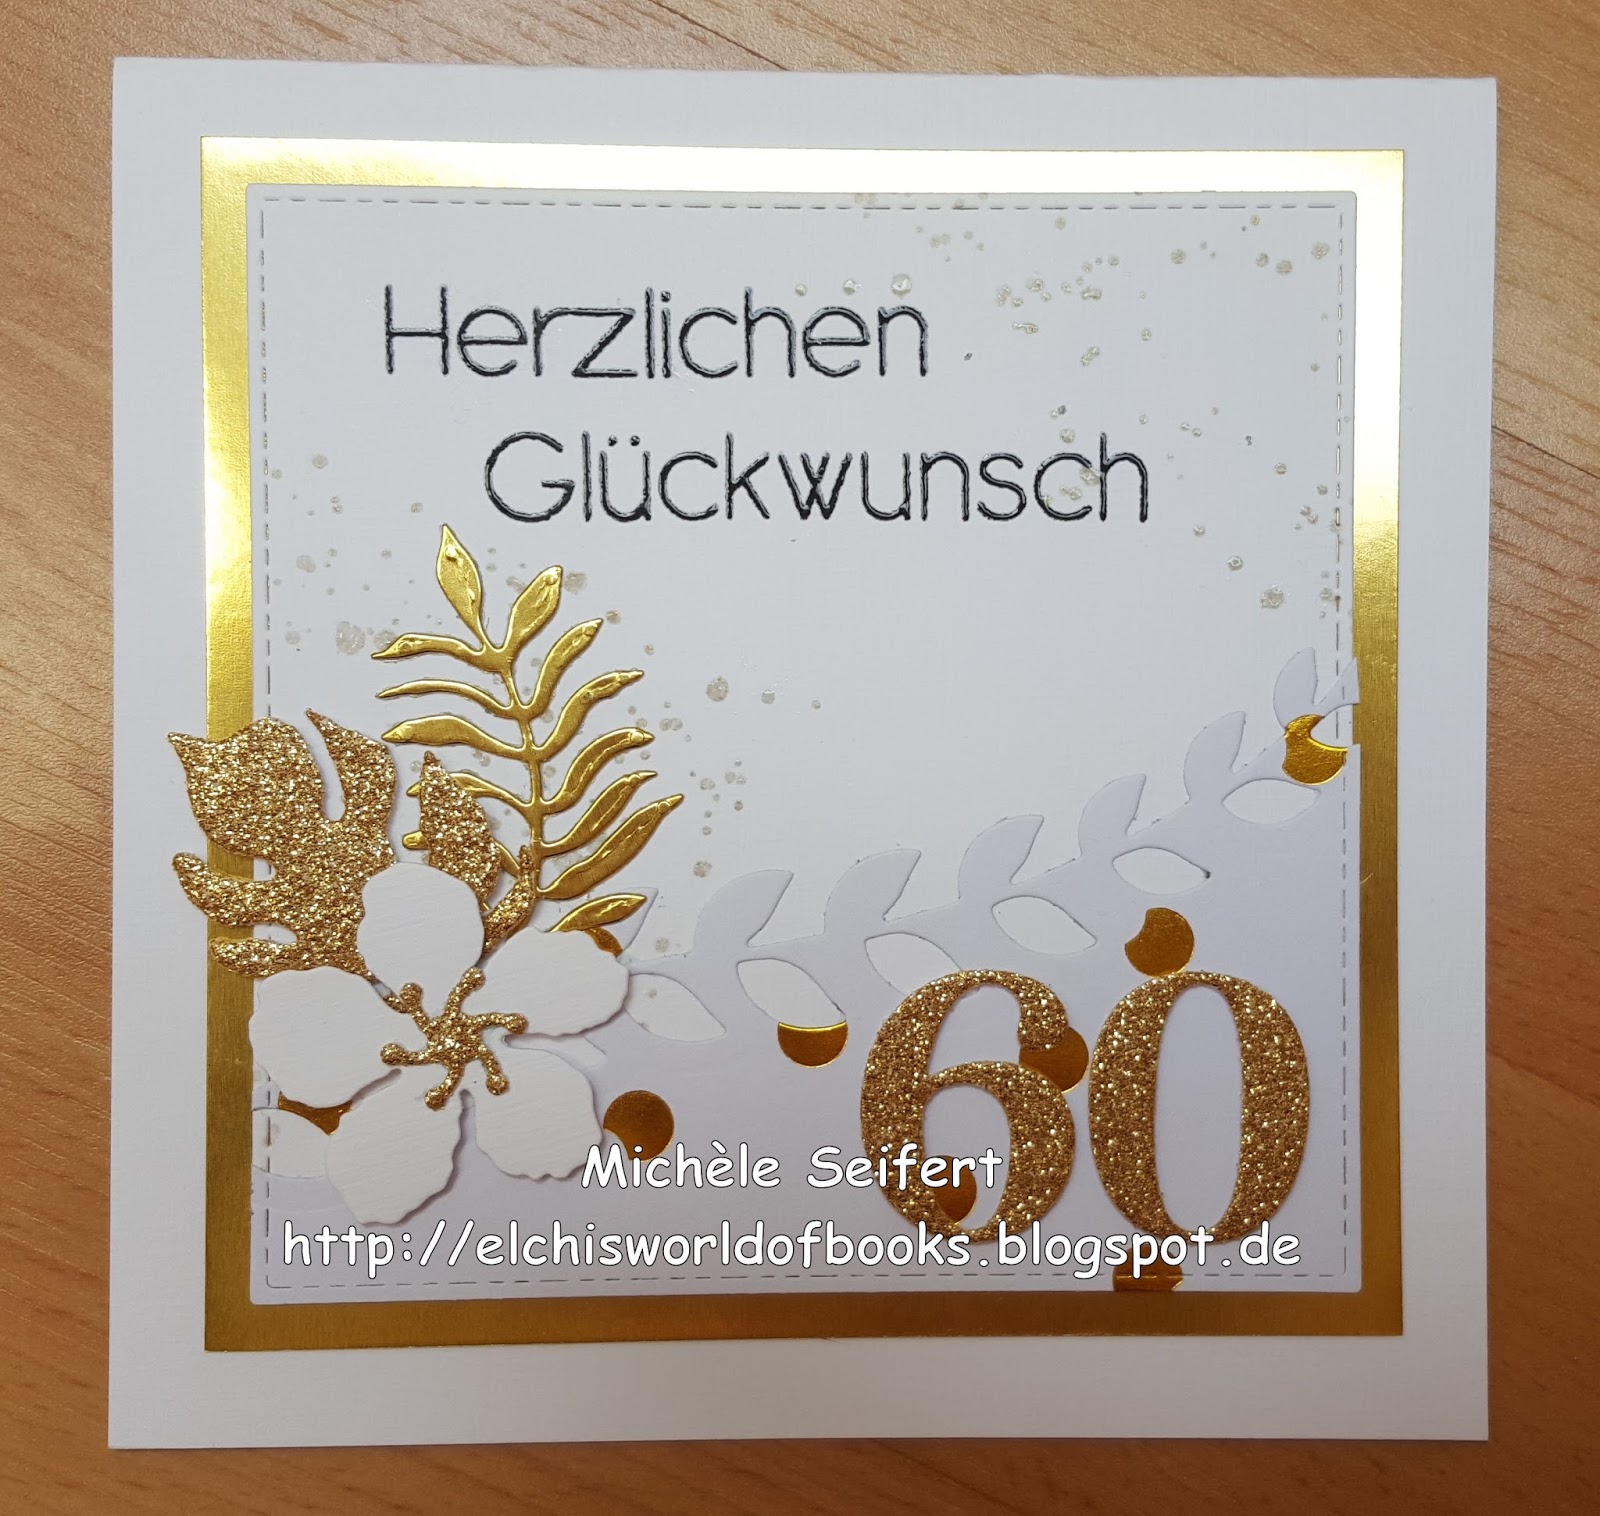 Crafting Karte Zum 60 Geburtstag Meiner Mama Elchi S World Of Books Crafts